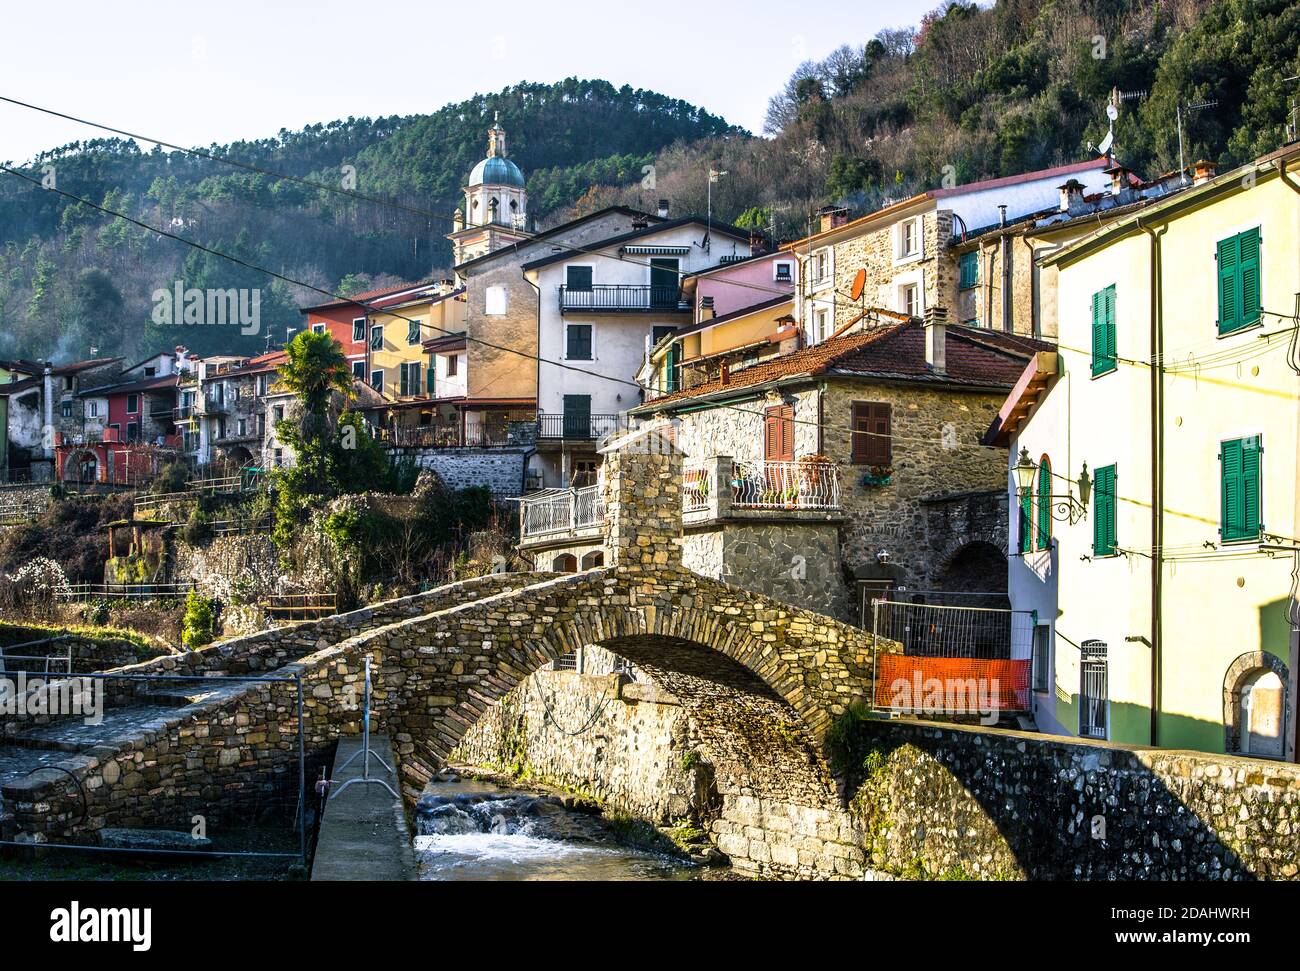 Landschaftlich schöne Aussicht auf italienische Dorf mit ikonischen römischen Brücke im Winter, Pignone, La spezia, Ligurien, Italien Stockfoto